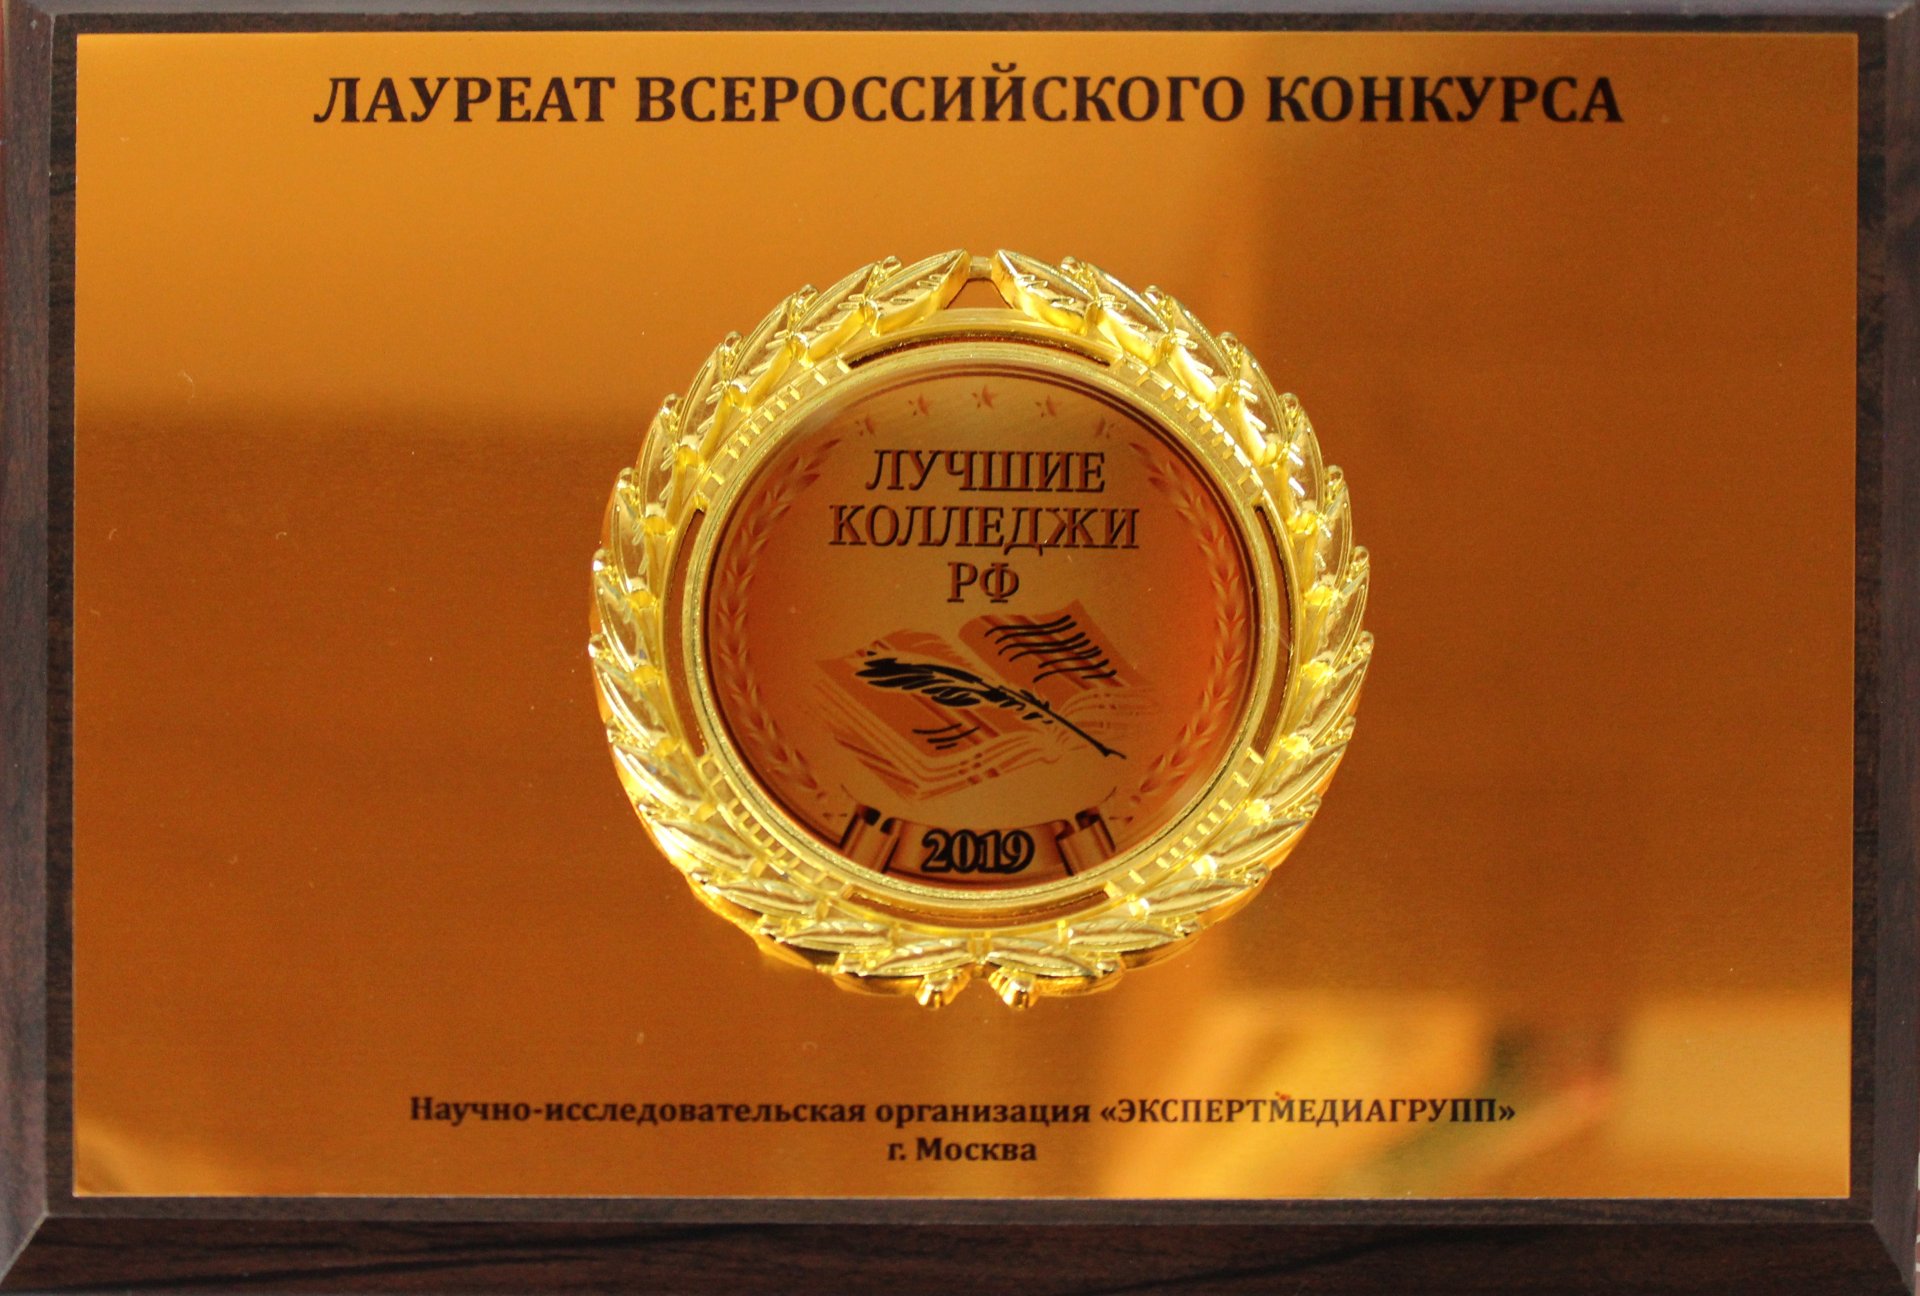 Лучшие колледжи Российской Федерации – 2019